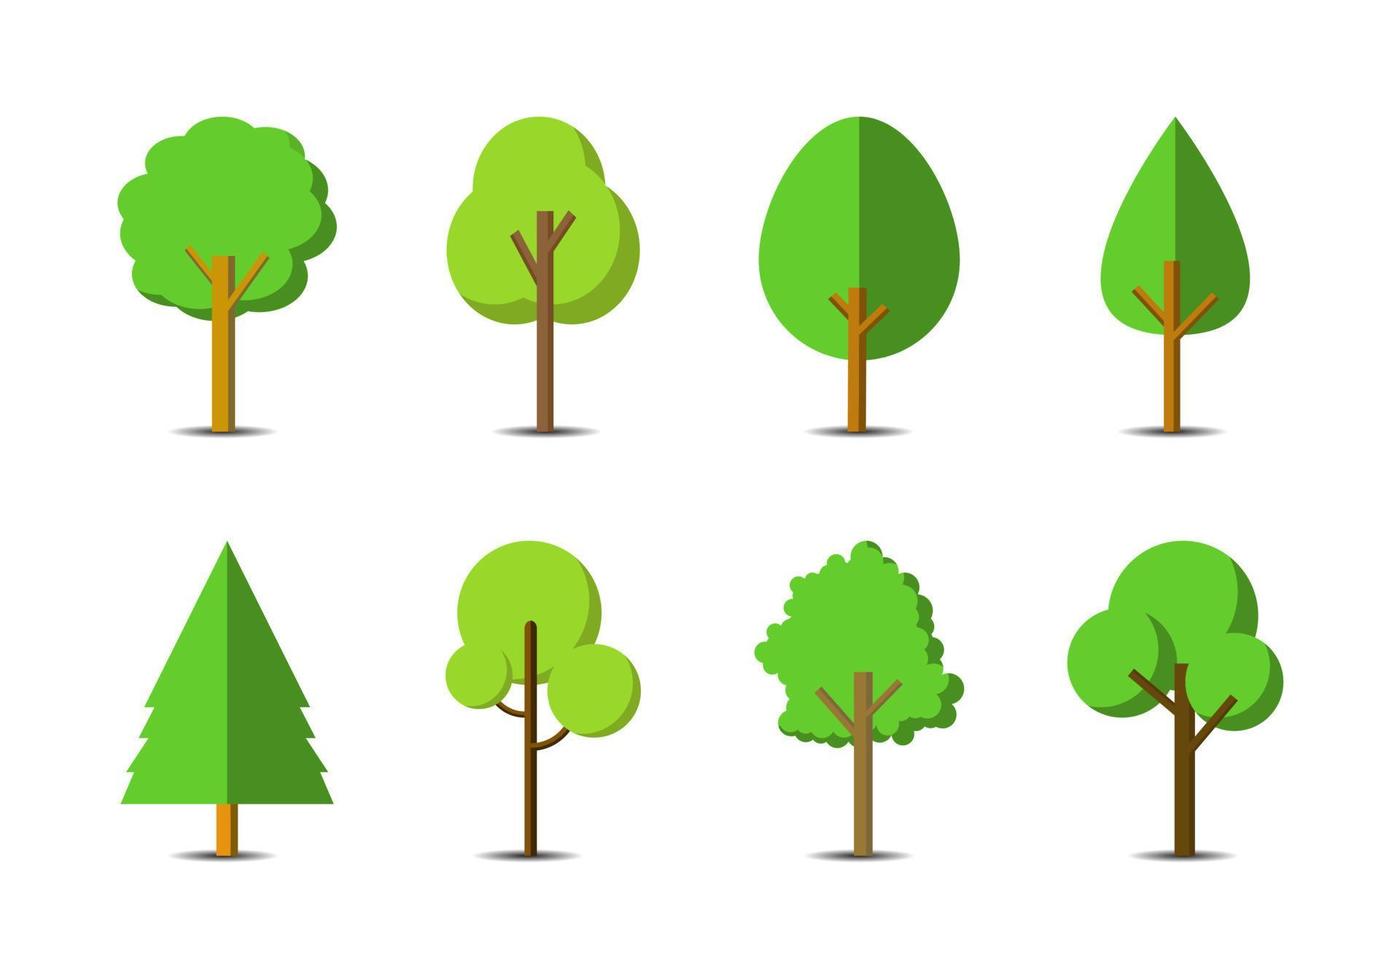 groene boom pictogrammenset op witte achtergrond, platte bos vector collectie, geïsoleerd tekenen natuur illustratie